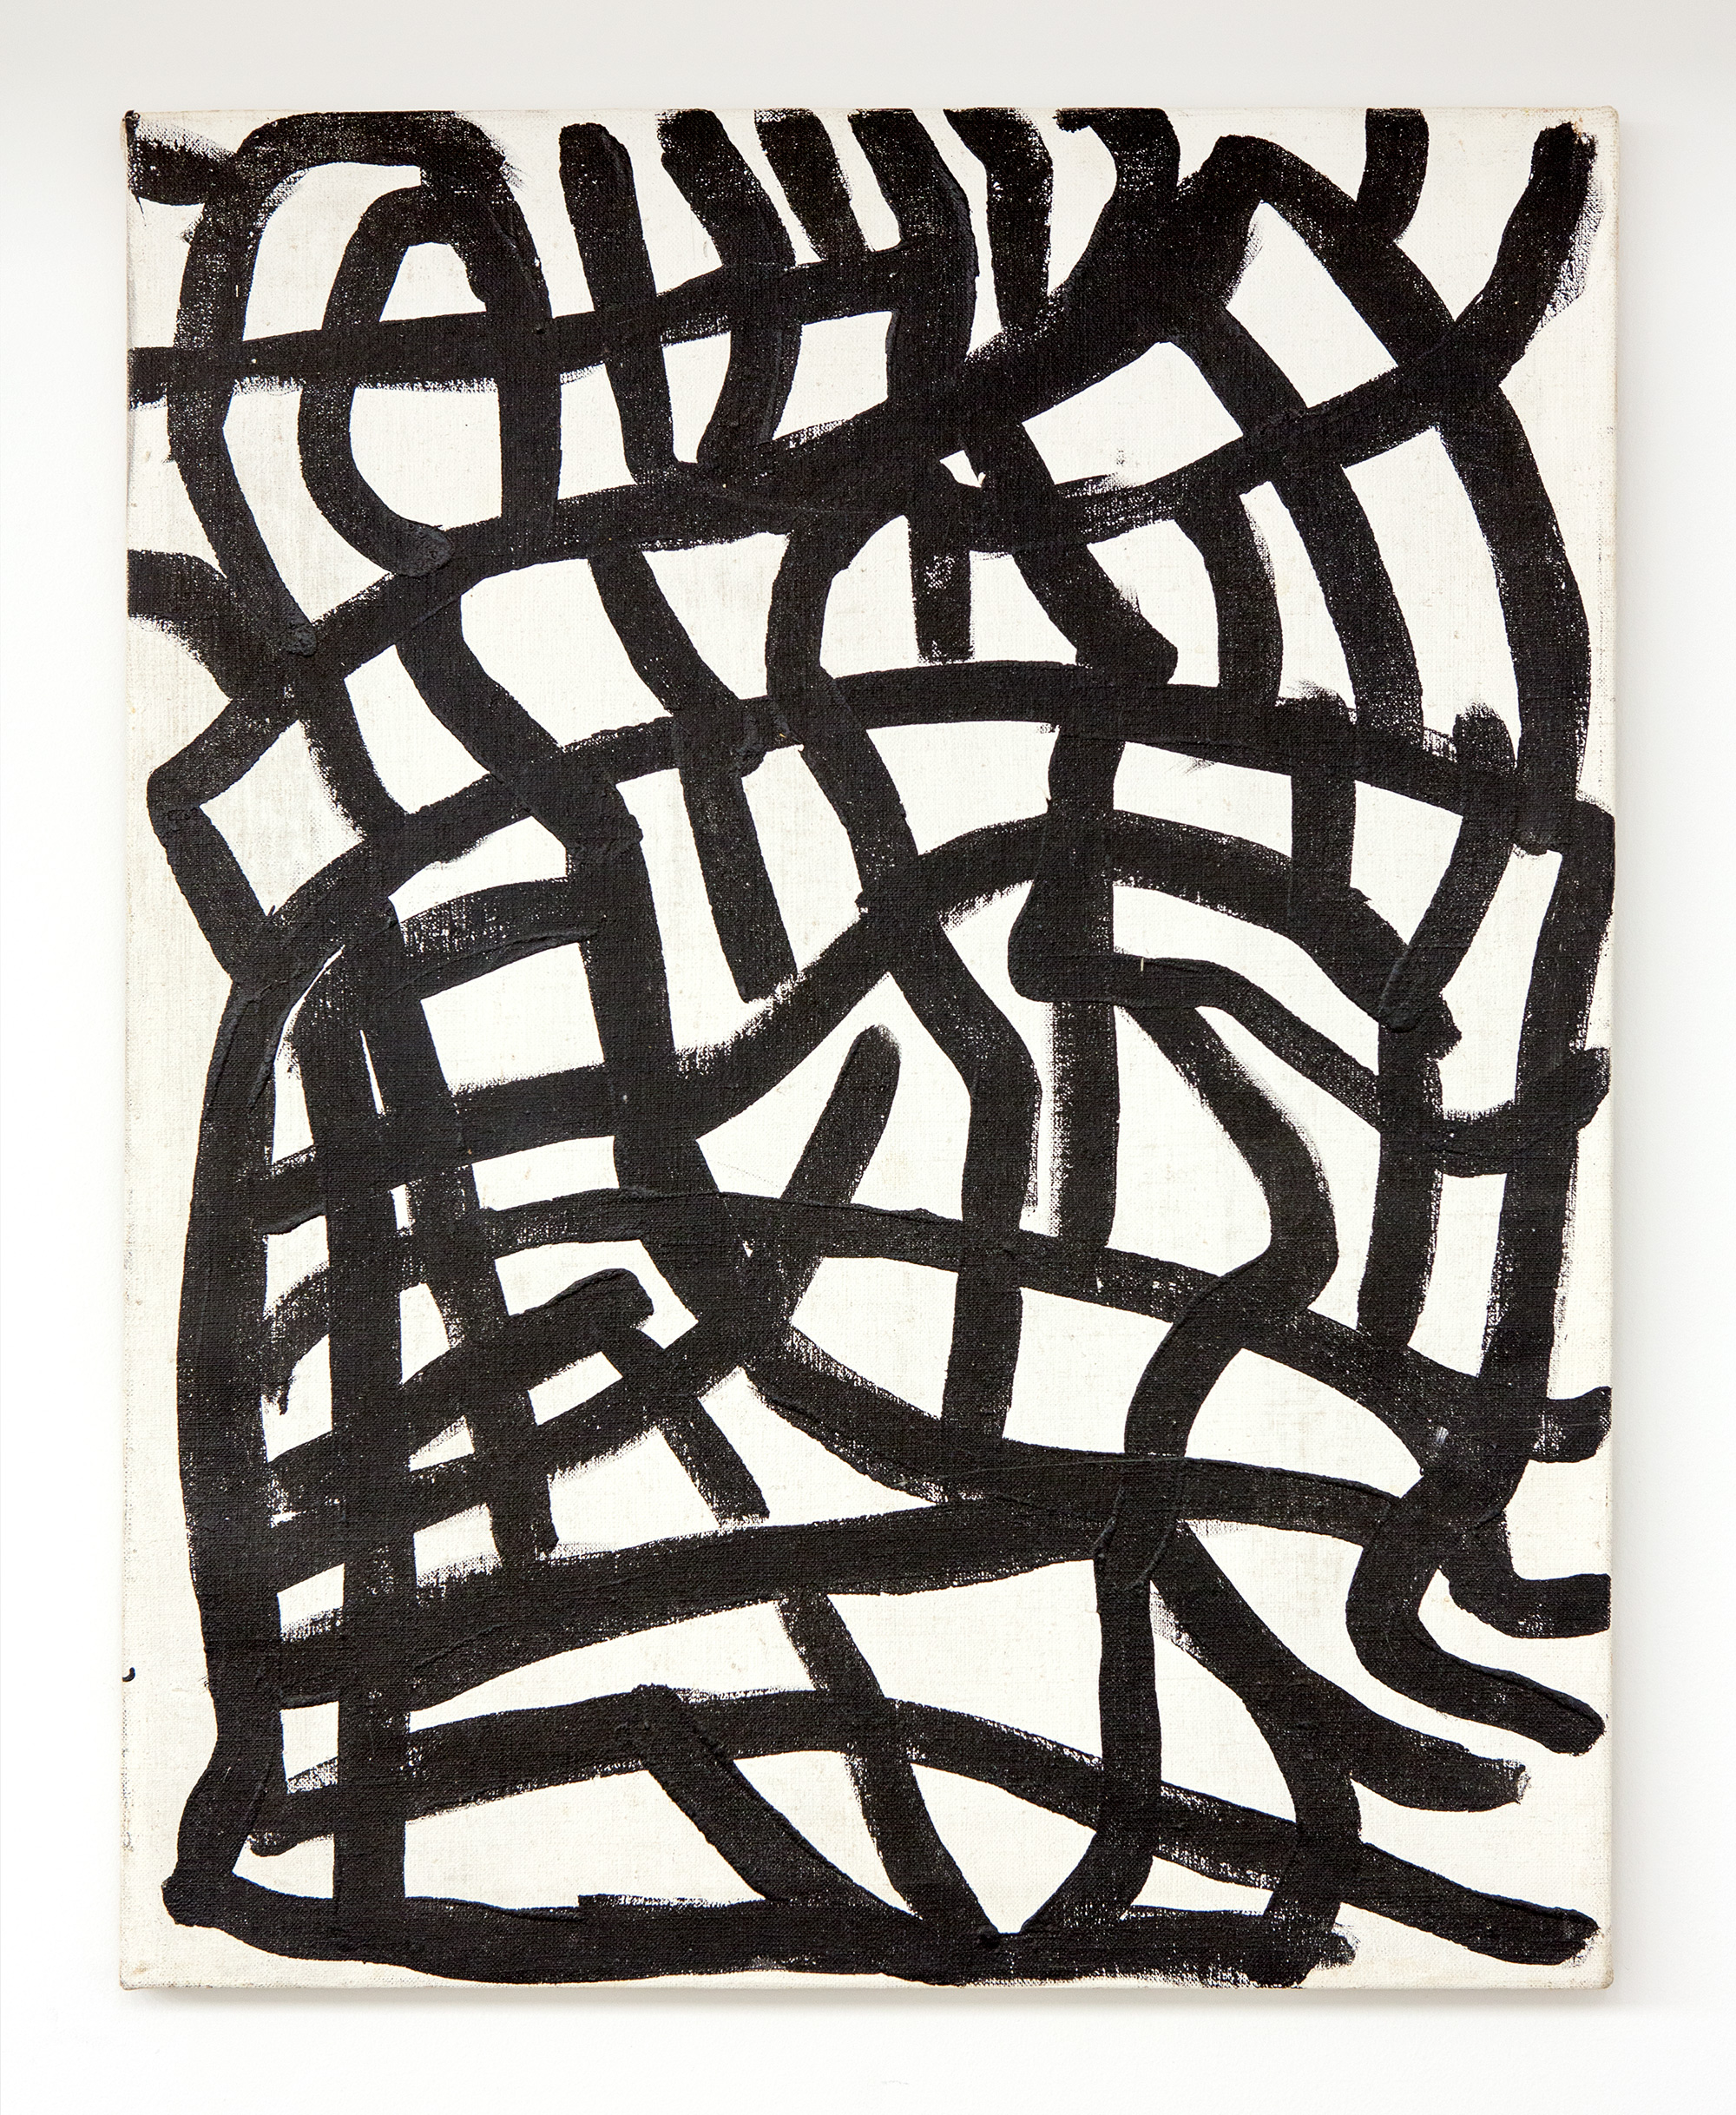 Emily Kame Kngwarreye, “Untitled”, 1995 , acrylic on canvas, 77 × 61 cm 